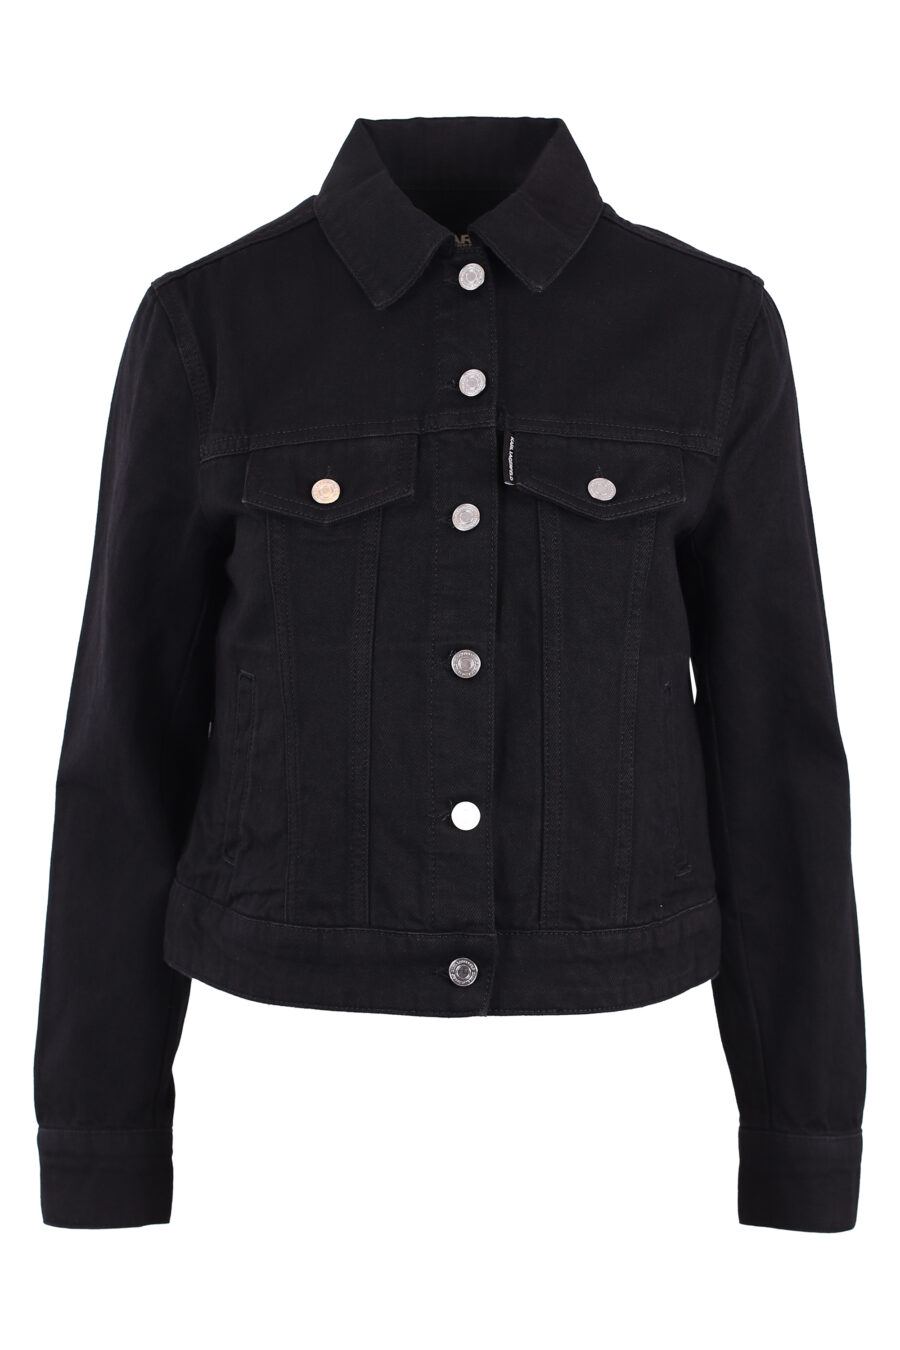 Veste en jean noir avec logo "karl" avec strass - IMG 6177